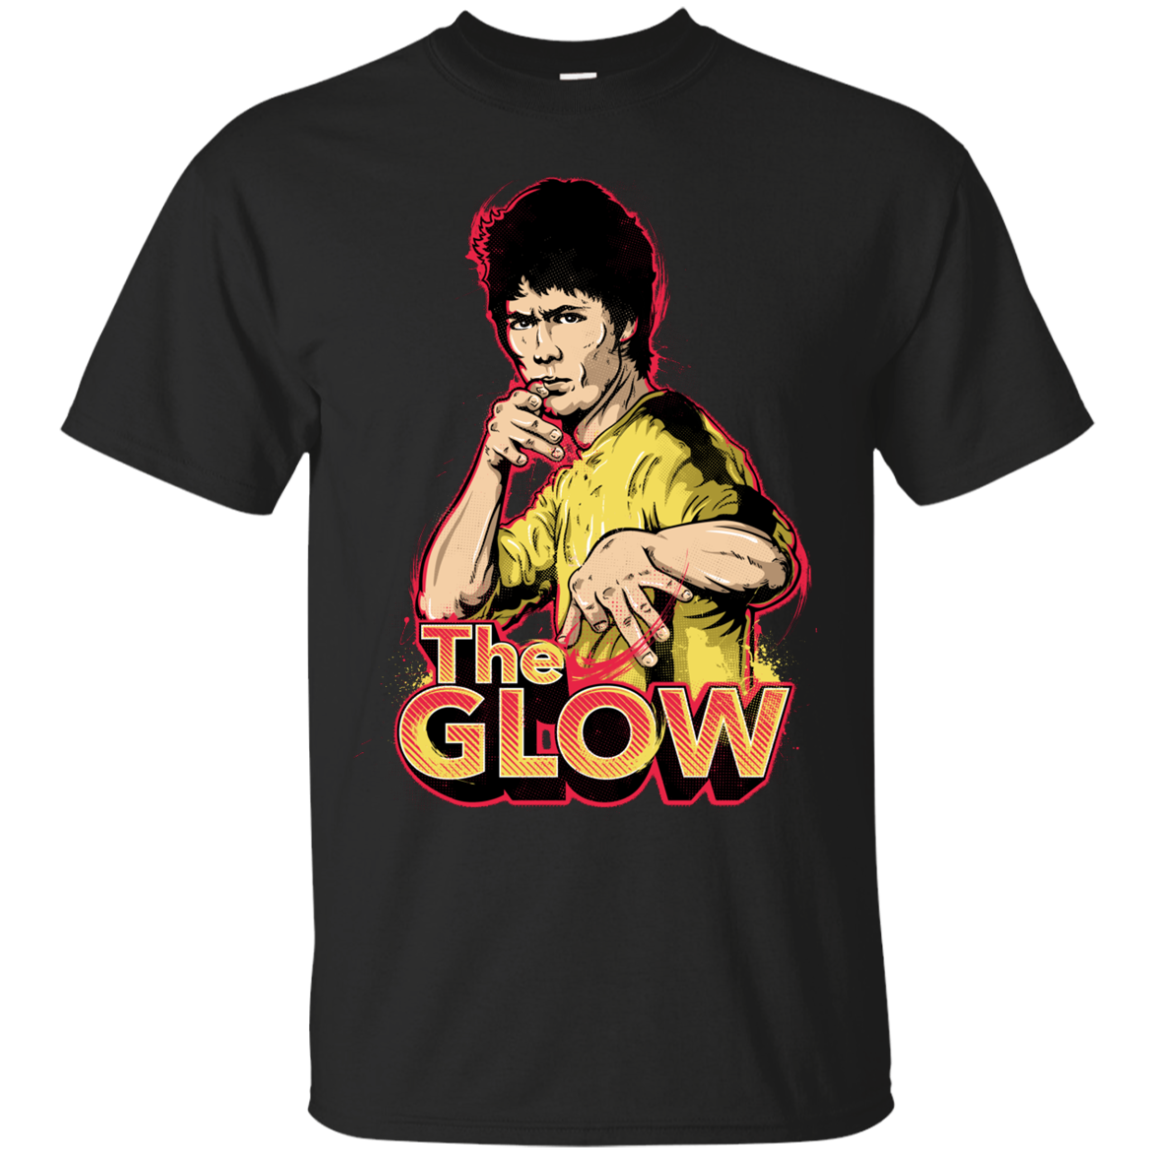 The Glow T-Shirt